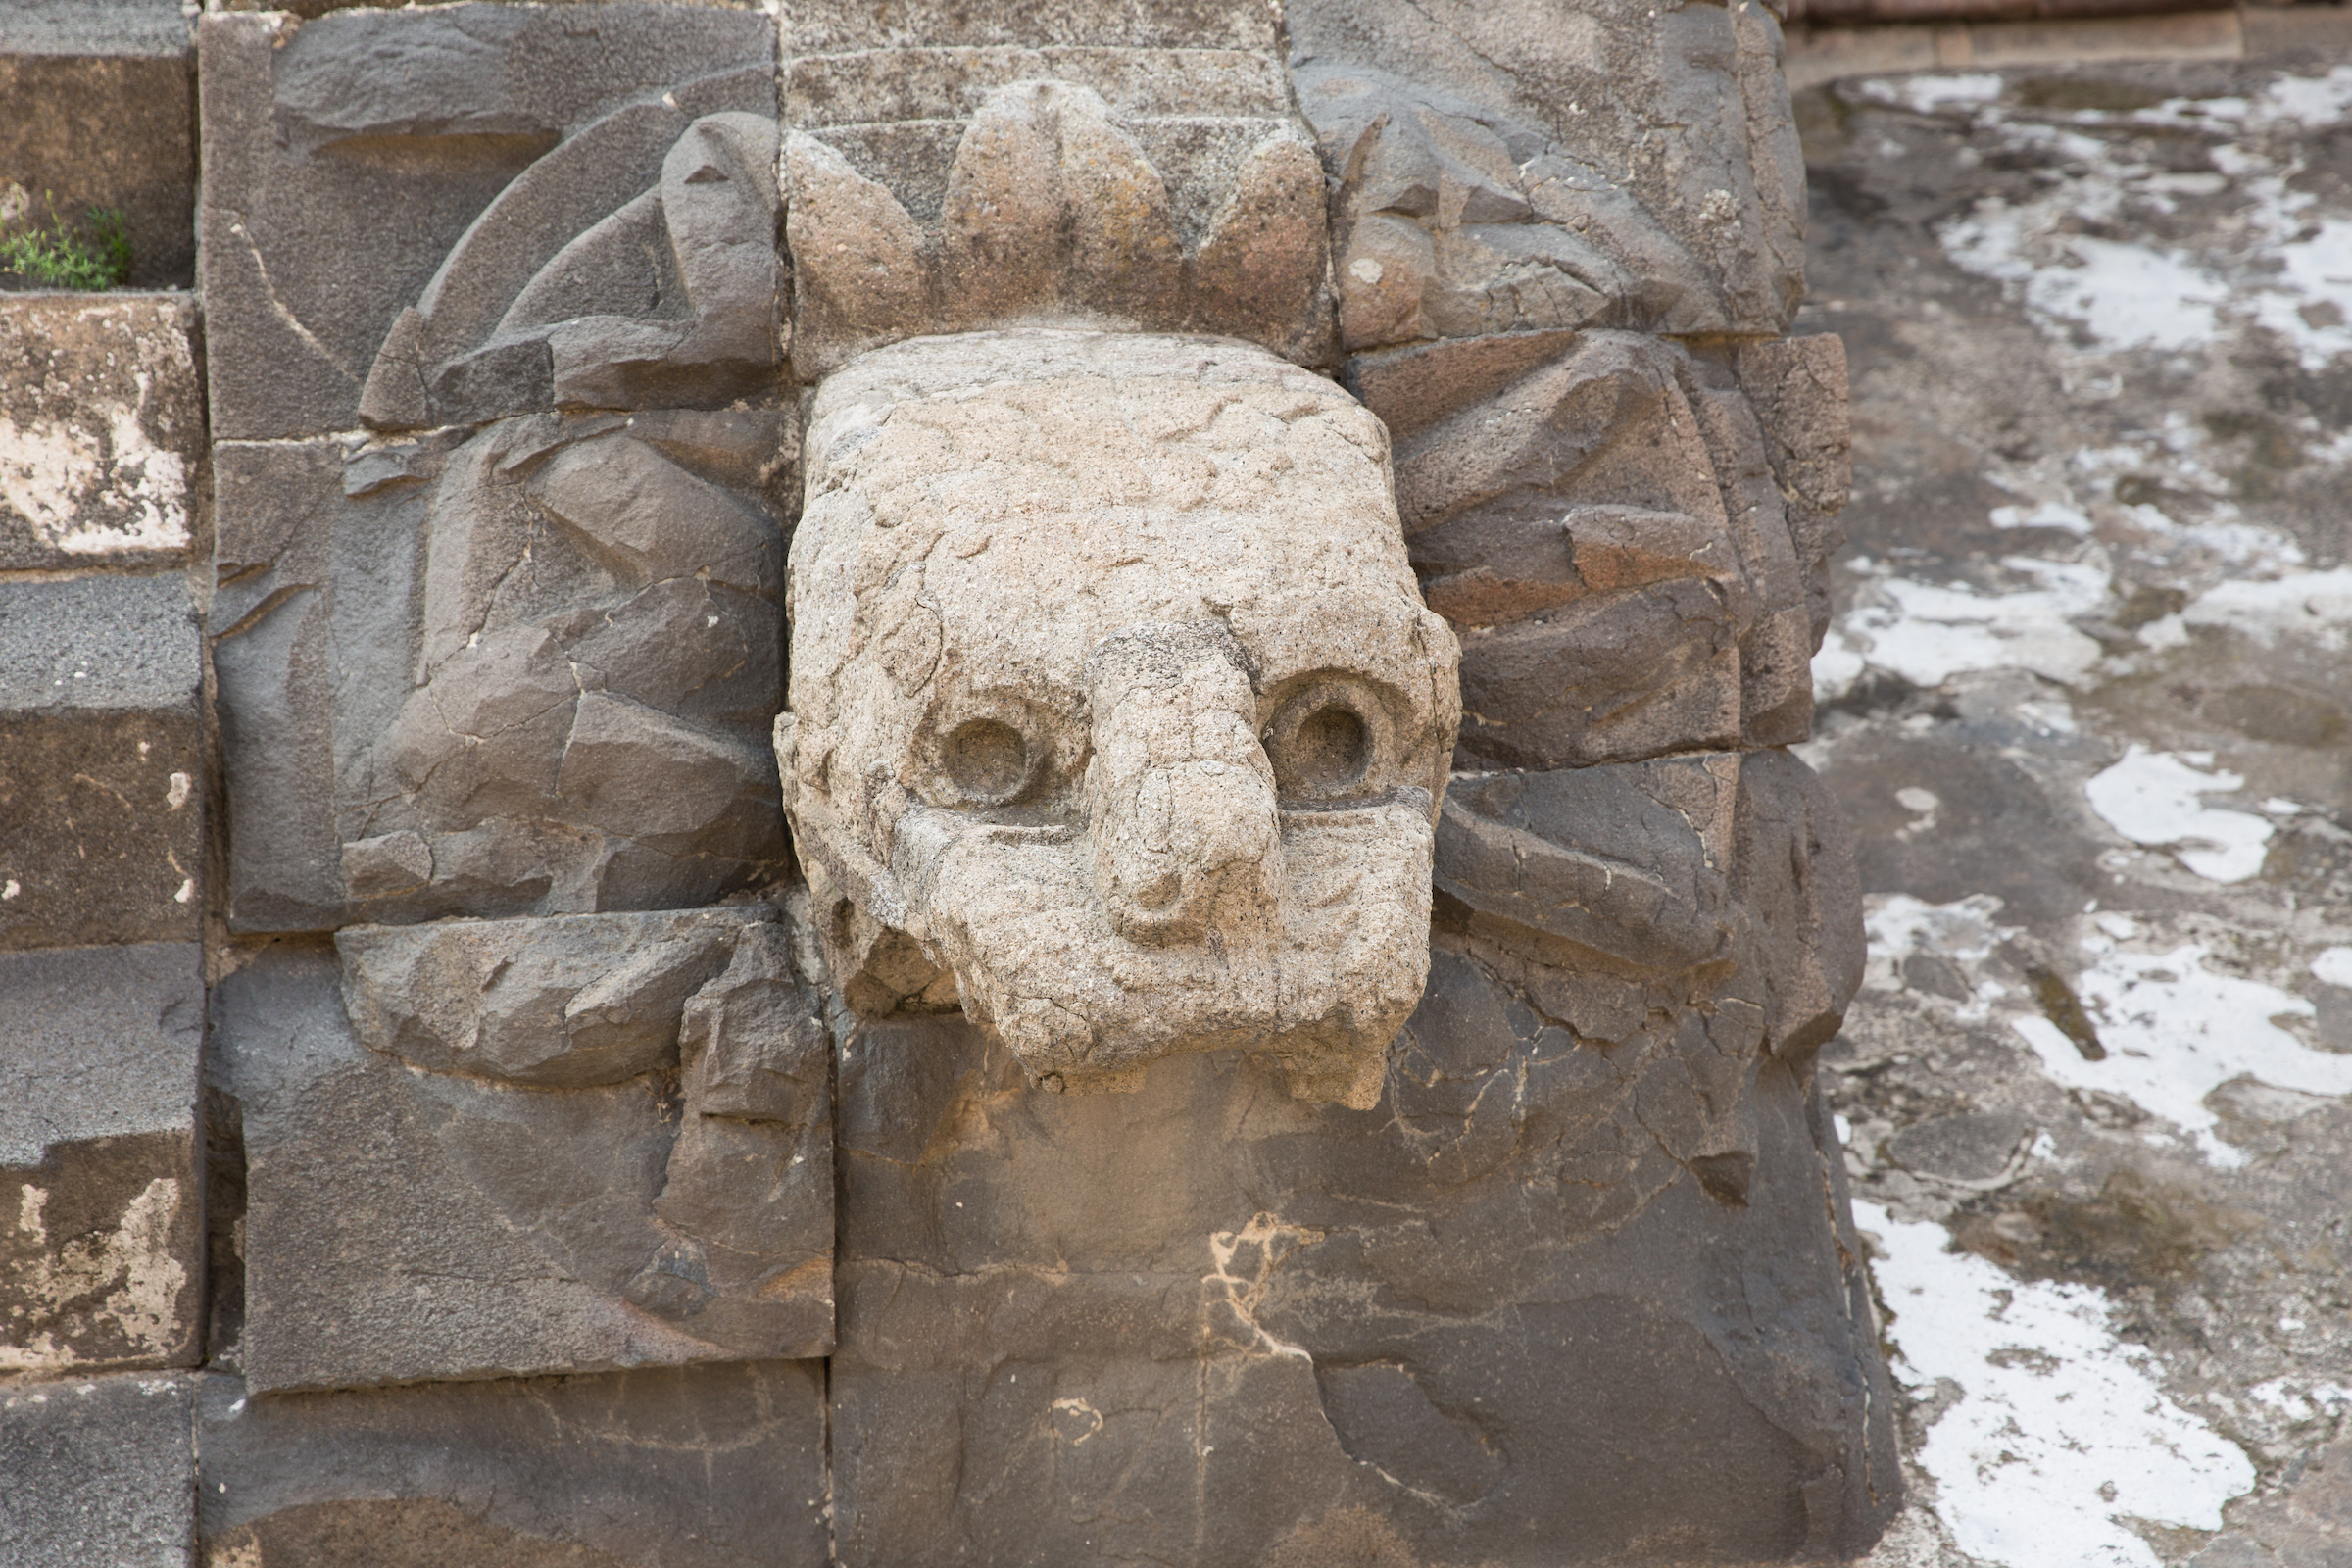 Serpent detail at a pyramid at Teotihuacan